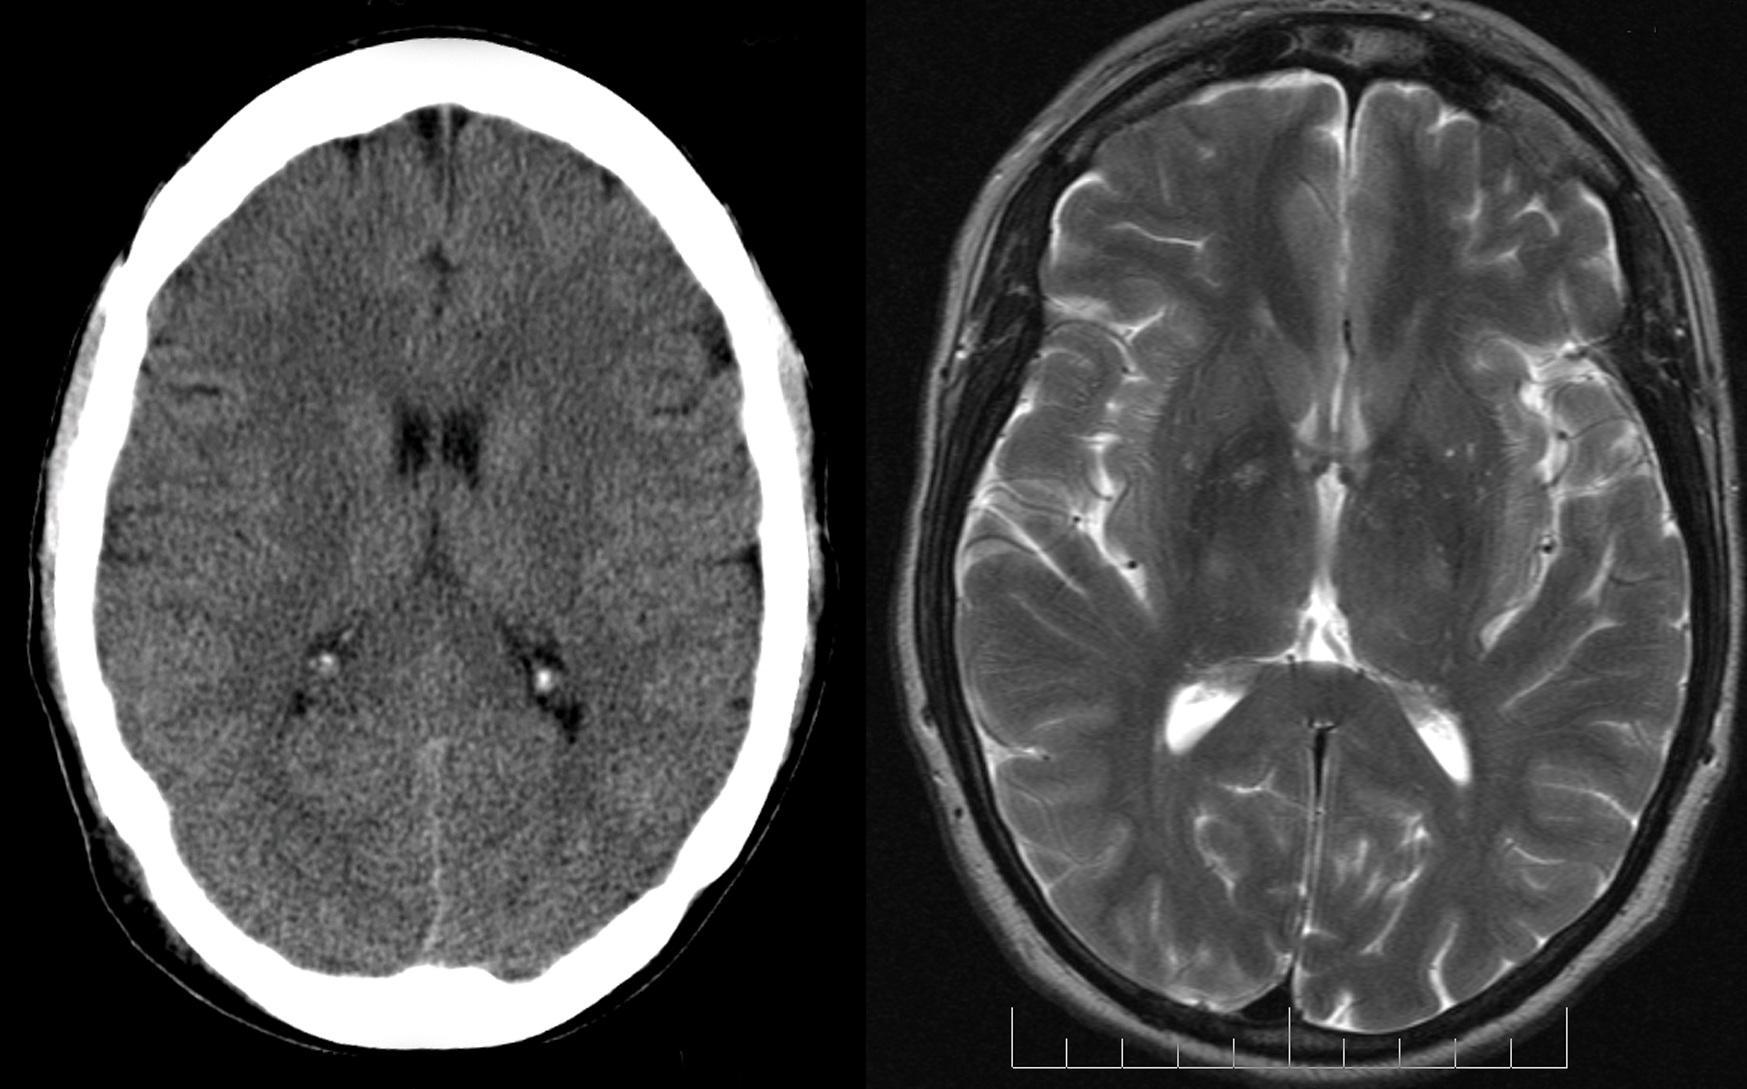 Слева компьютерная томограмма головного мозга, а справа- магнитно-резонансная. Легко заметить, насколько лучше различимы структуры мозга на МРТ.